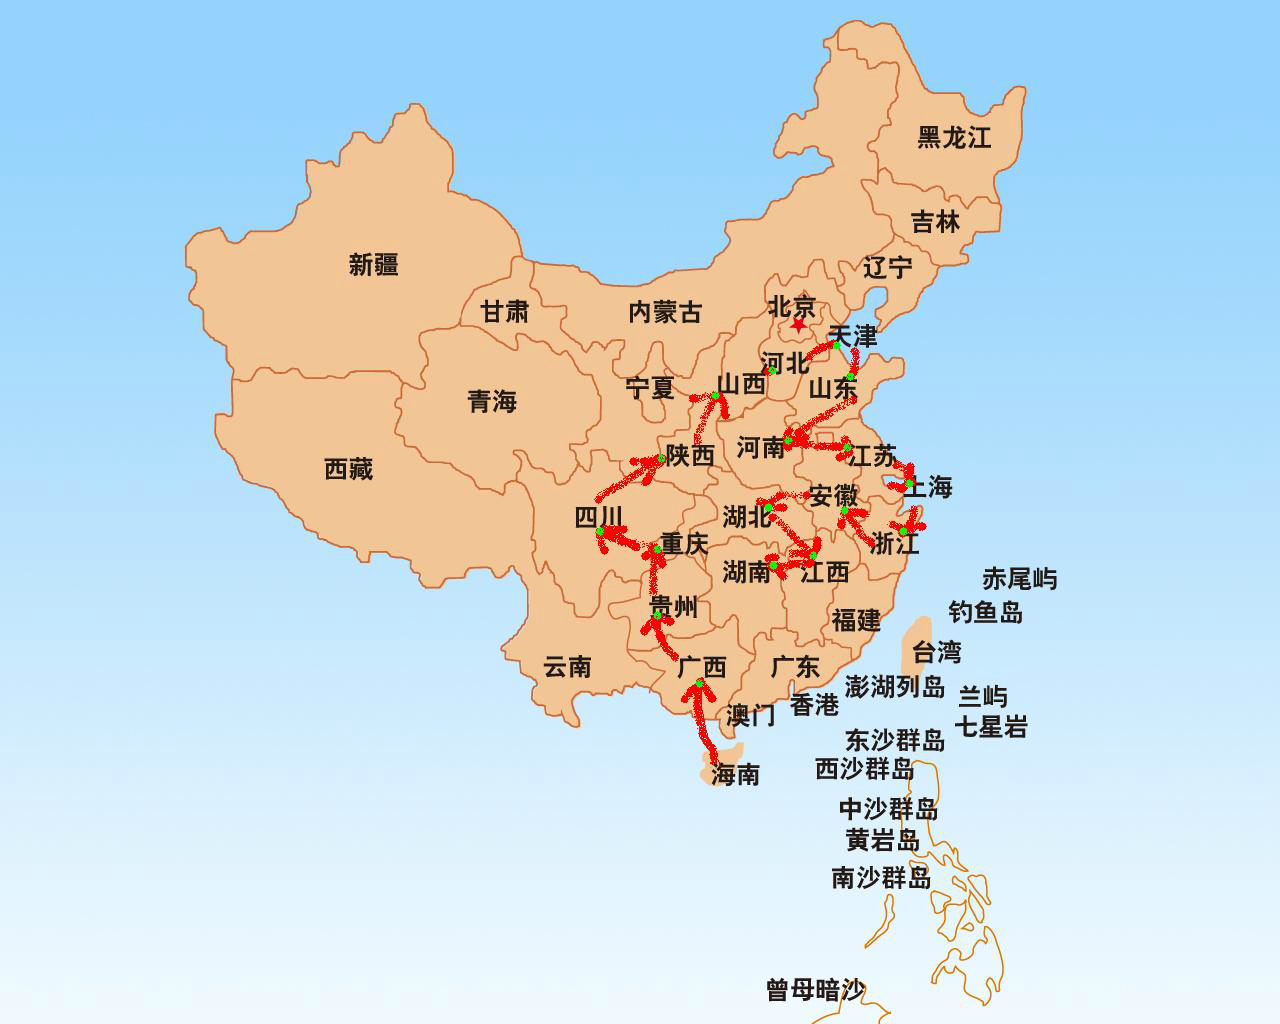 想要搭火车环游中国,可不知道如何设计路线才比较合理